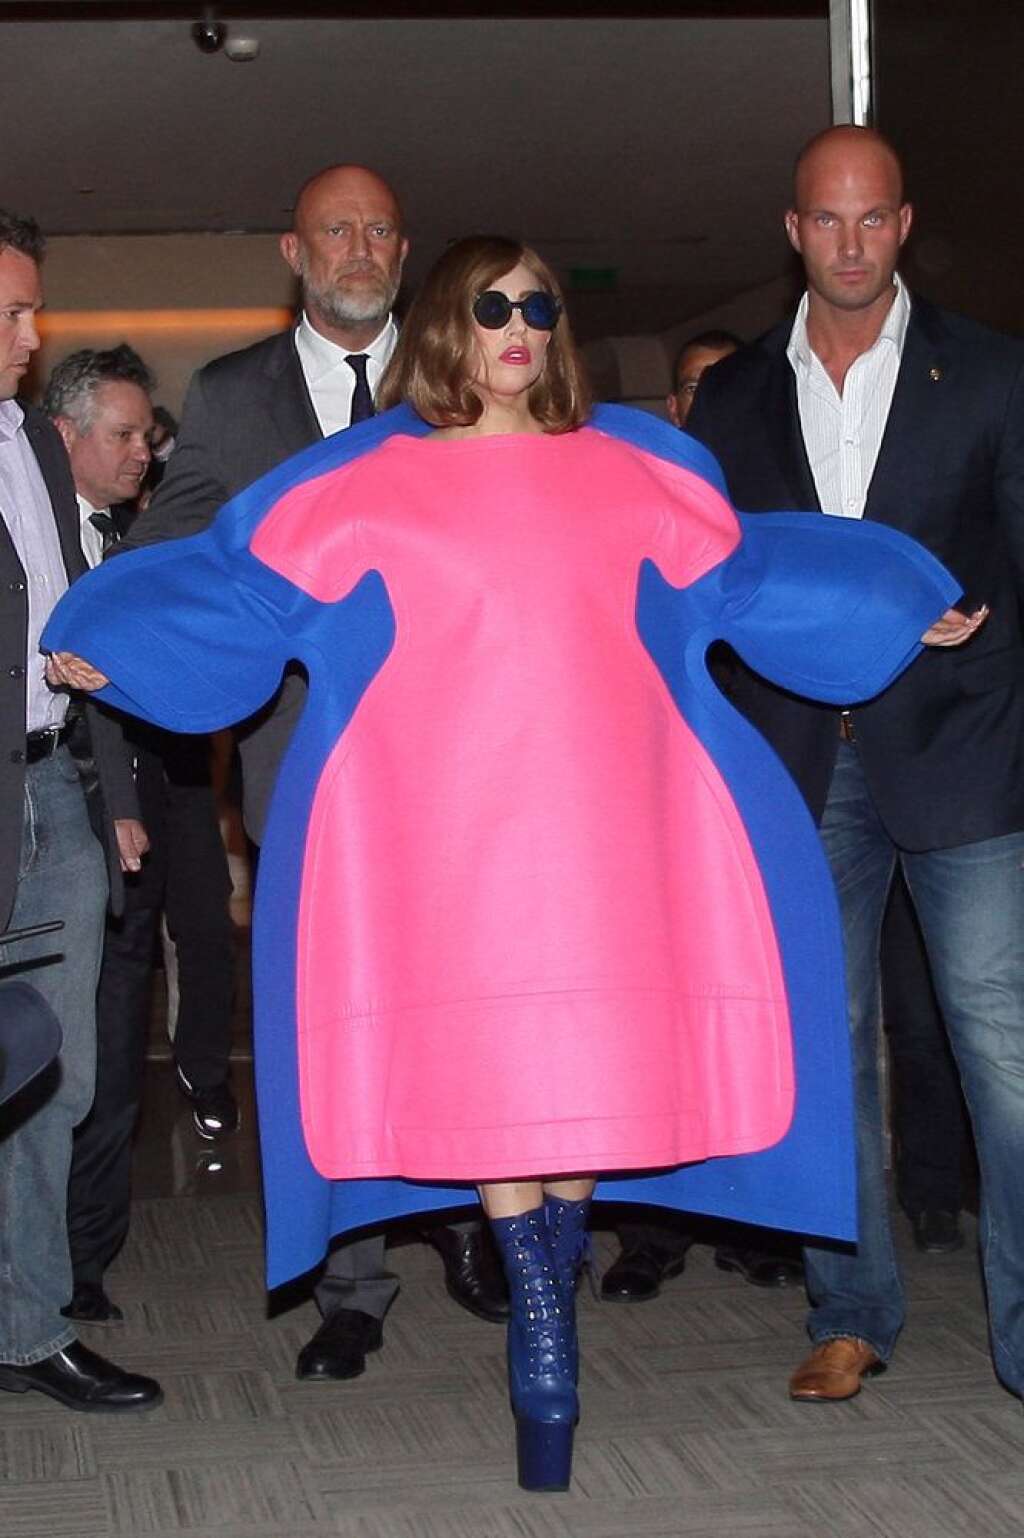 Démesurée - Lady Gaga porte une robe volumineuse bicolore signée Comme des Garçons, à la sortie de l'hôtel Vendôme, à Paris. Des bottes à grandes plates-formes et des lunettes noires complètent ce look déjanté. On aime le jeu de superposition de la robe et le rouge à lèvres assorti. (Le 22 septembre 2012)